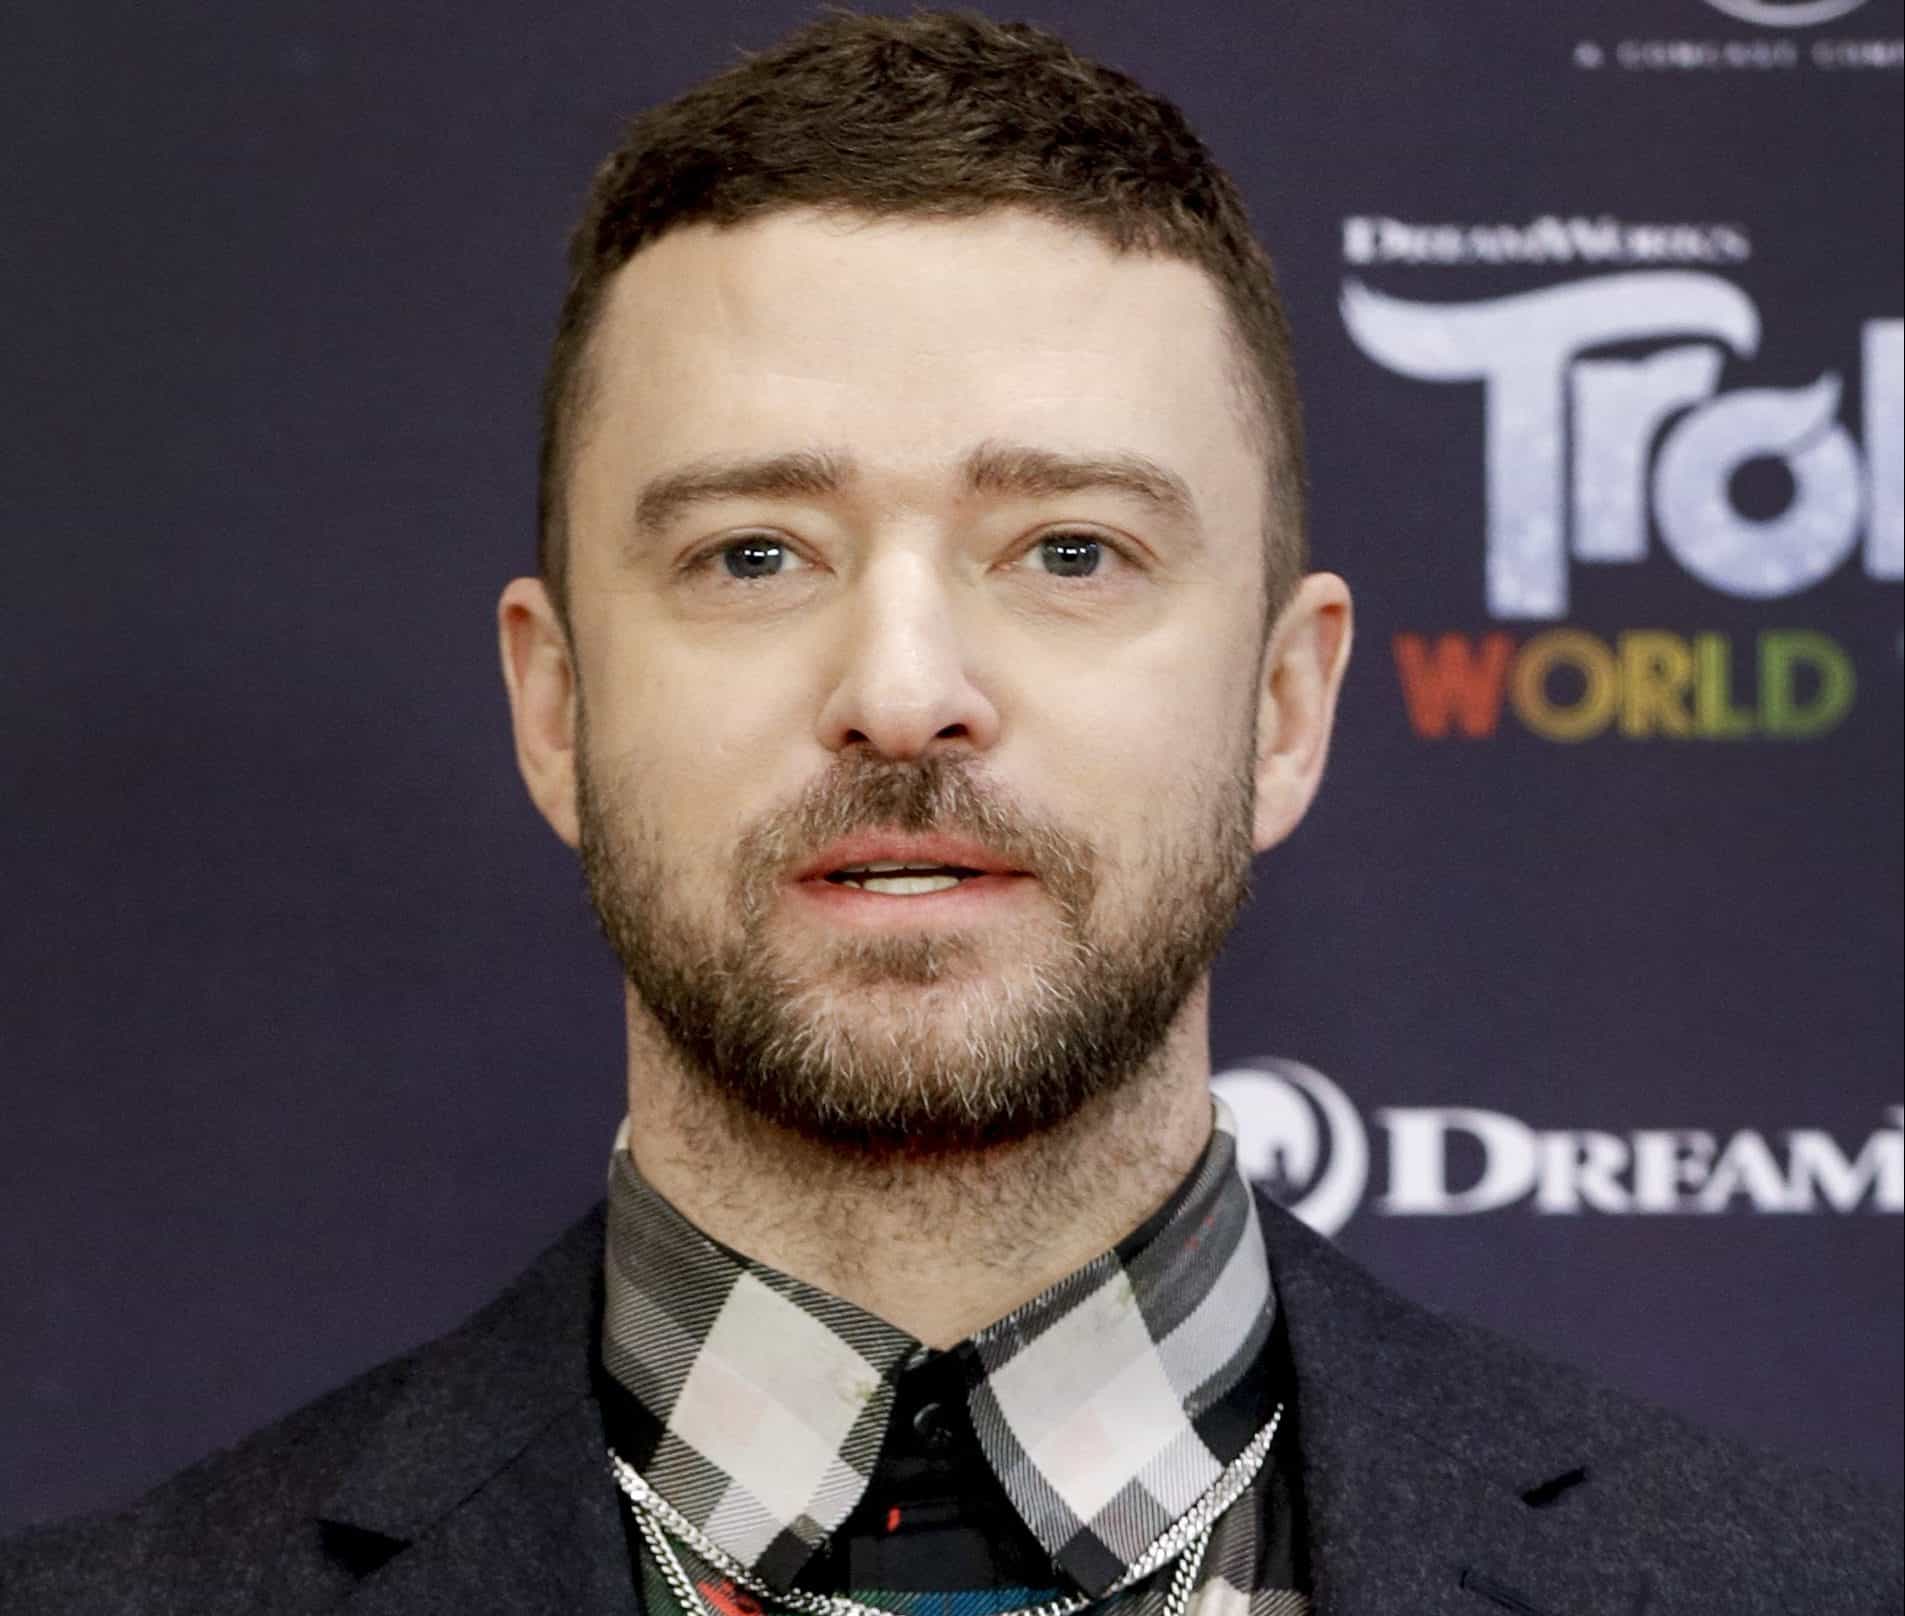 Lekcja stylu: czego nauczyliśmy się od Justina Timberlake’a?